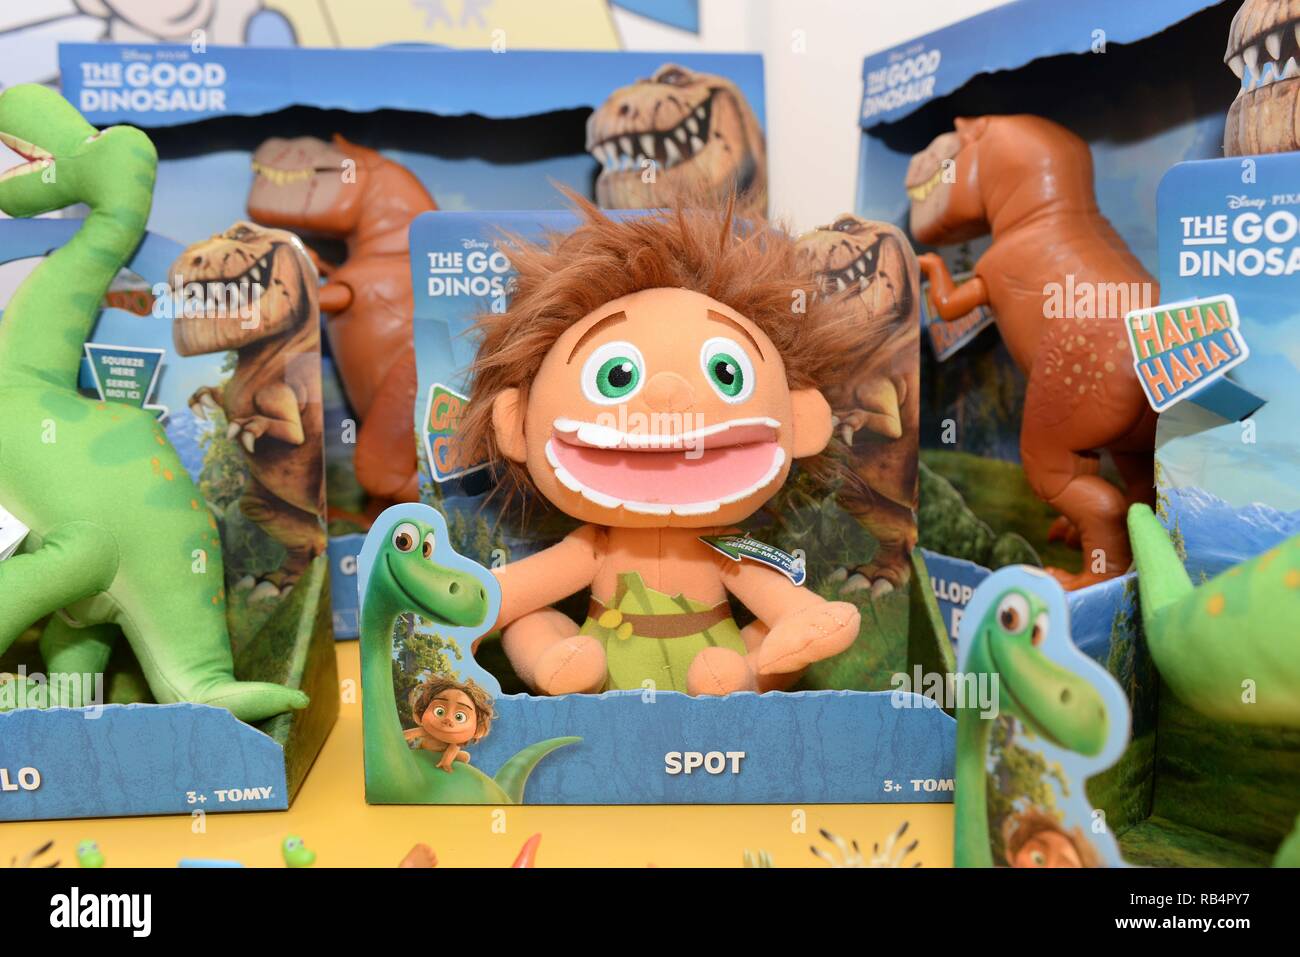 Productos oficiales de la próxima película de Disney Pixar 'buenos' de  dinosaurios en exhibición en tienda de juguetes Hamleys para 'TOMY's World  jugar día' donde: Londres, Reino Unido cuando: 28 Oct 2015